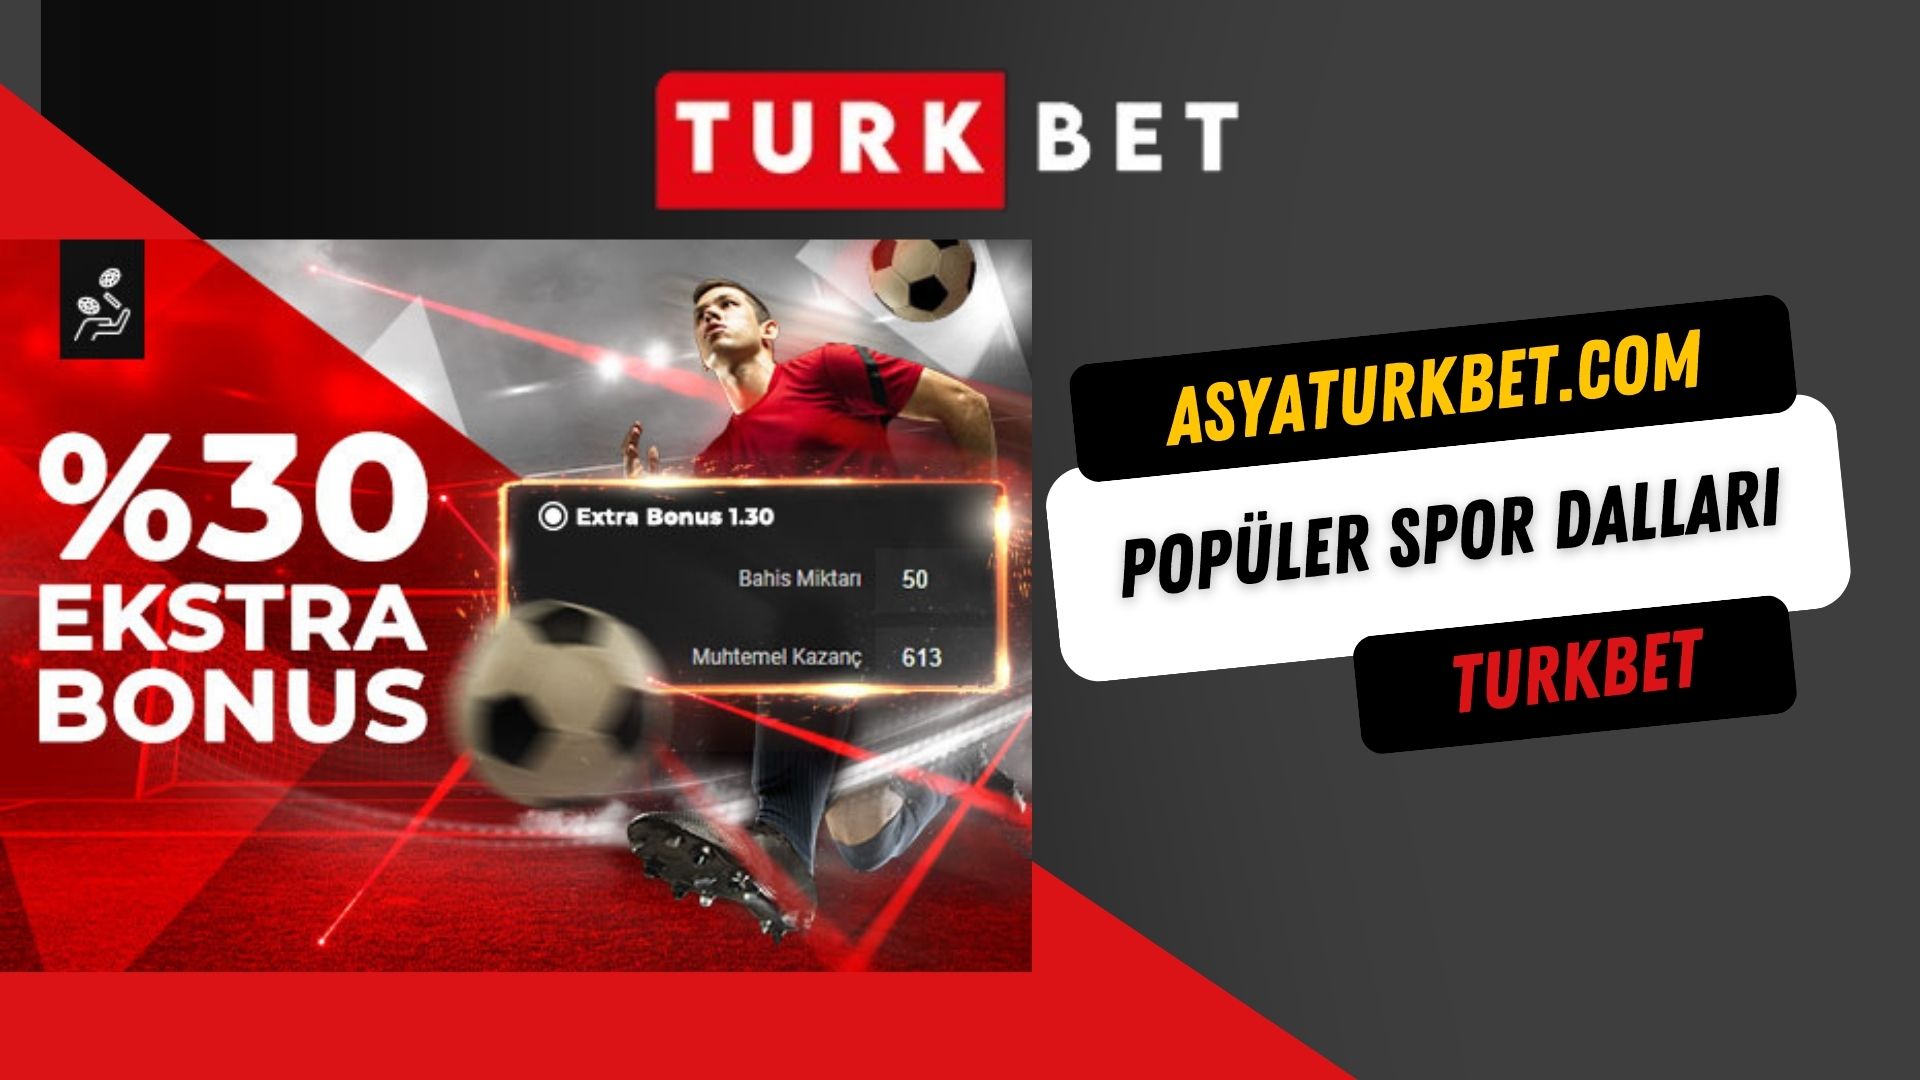 Turkbet Popüler Spor Dalları